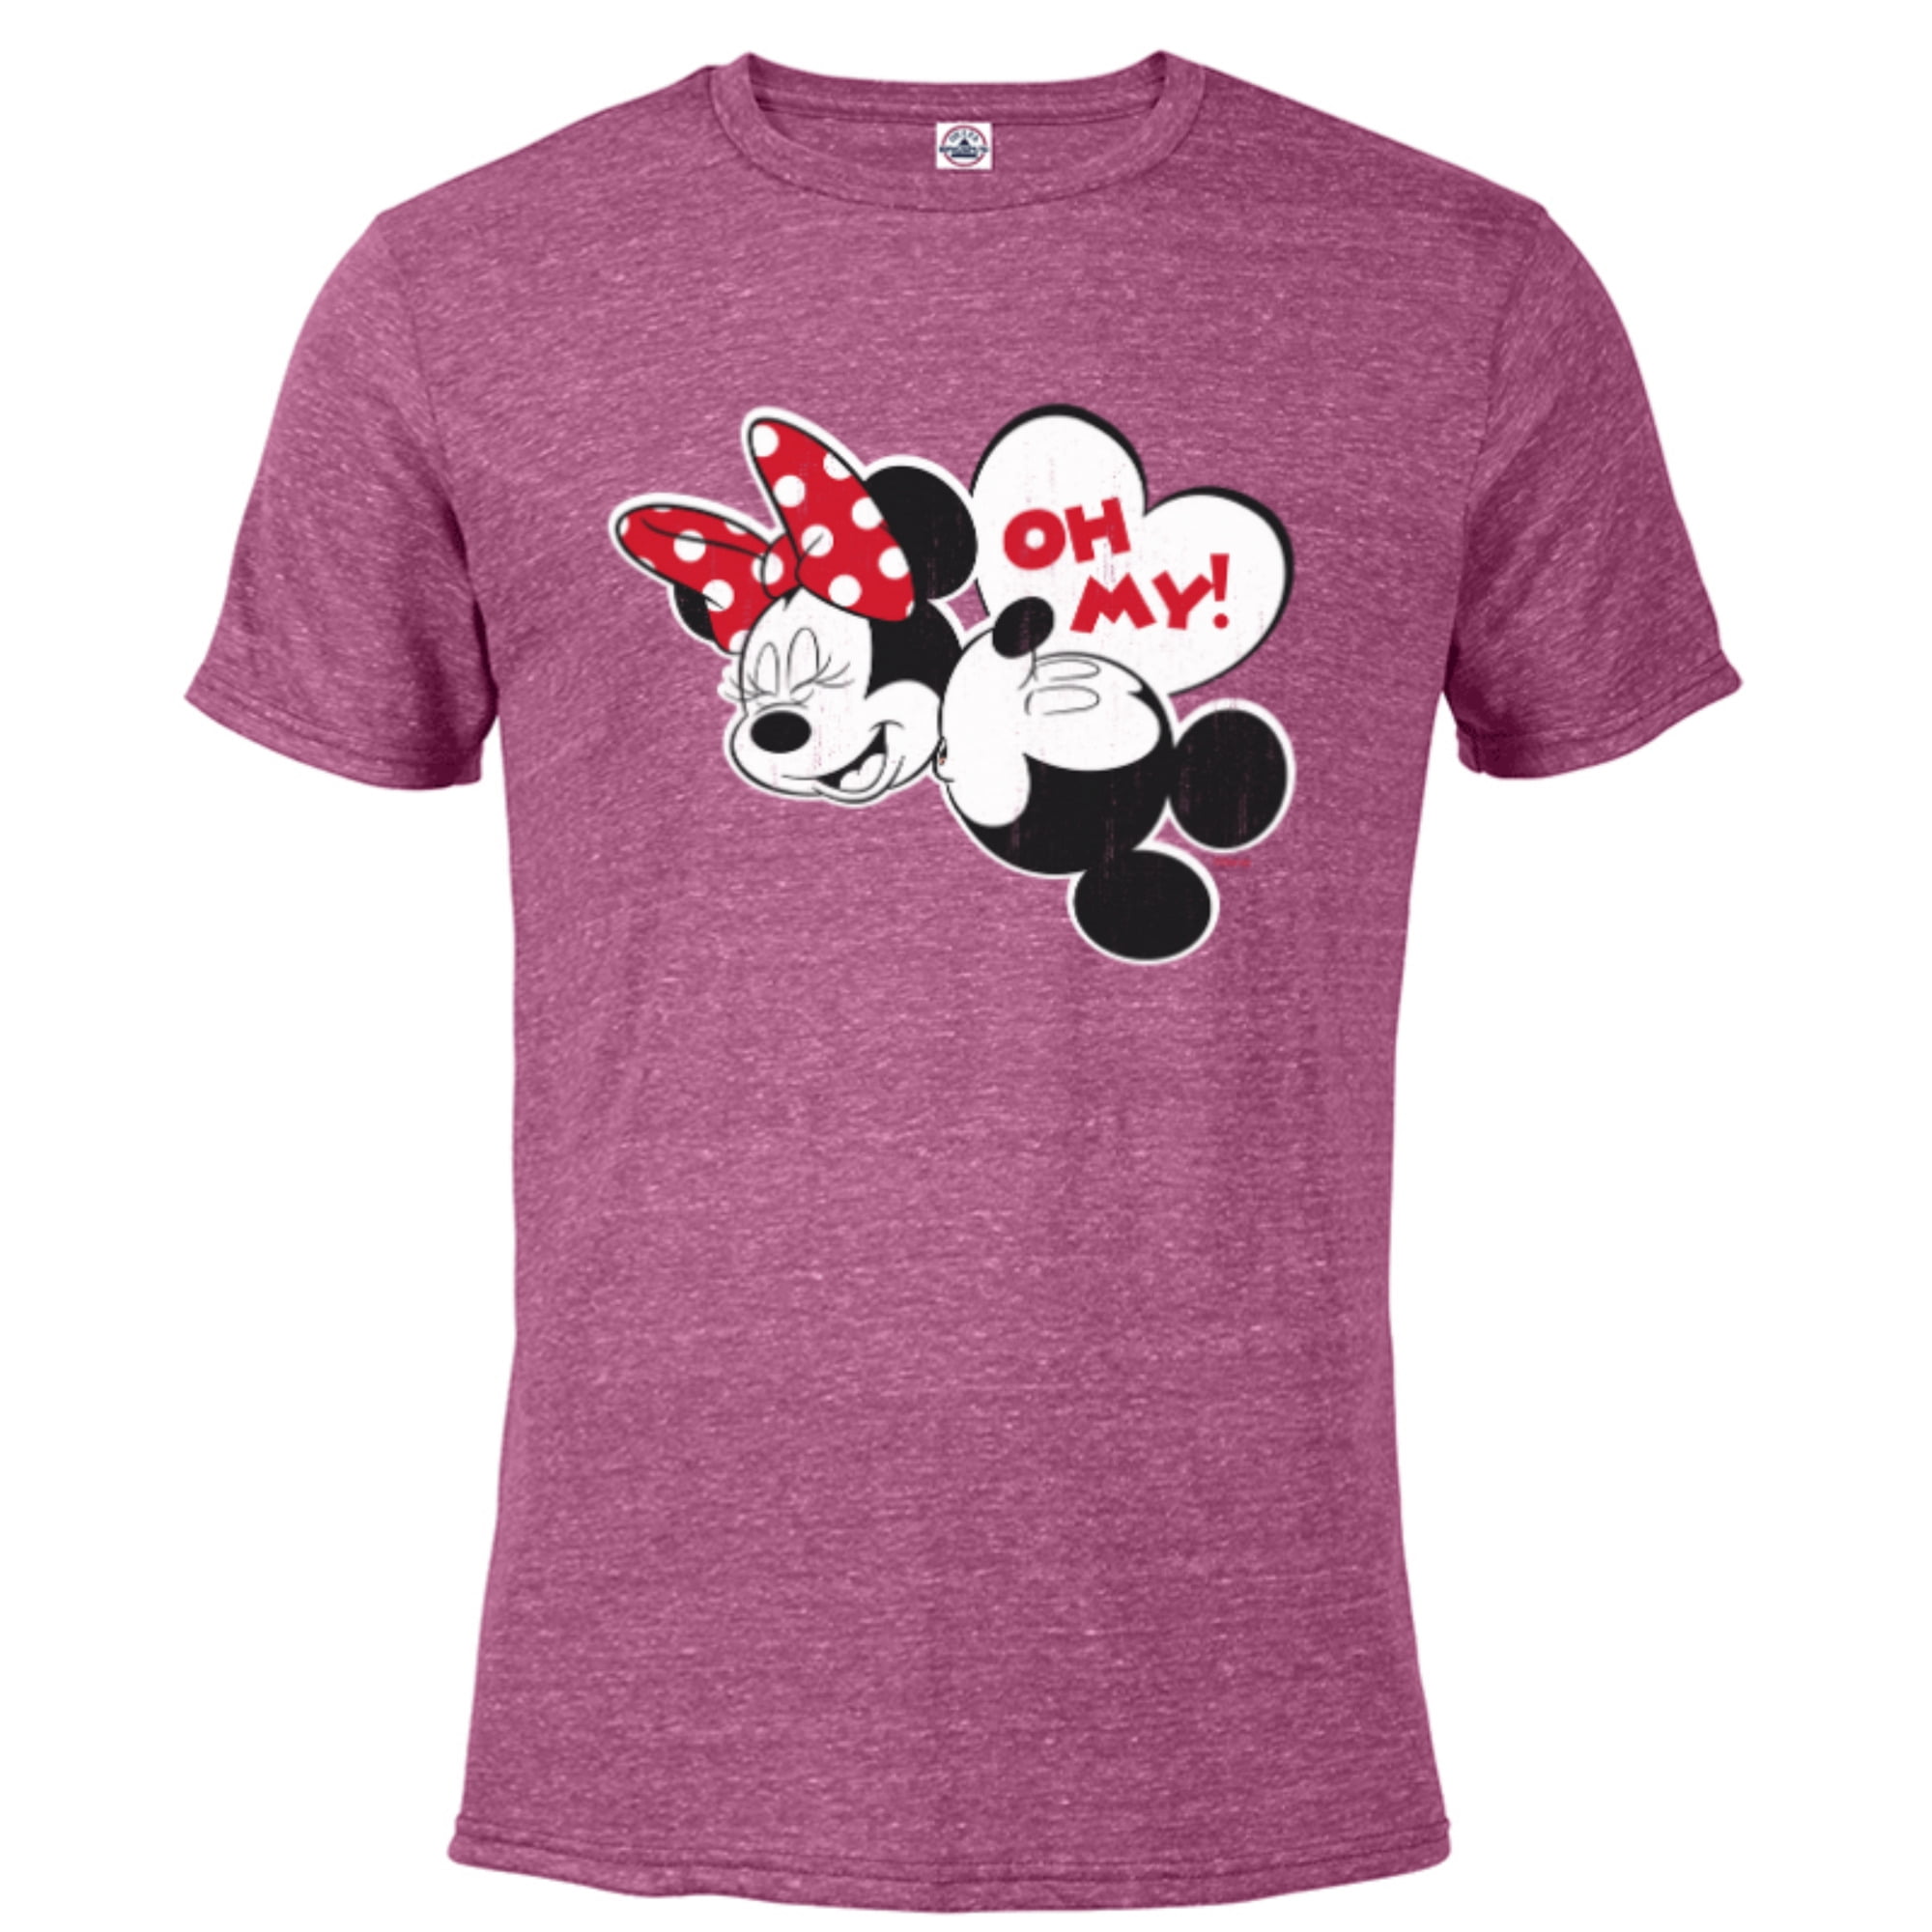 Top-selling Item] Personalized Mickey Minnie Kiss Disney Pattern